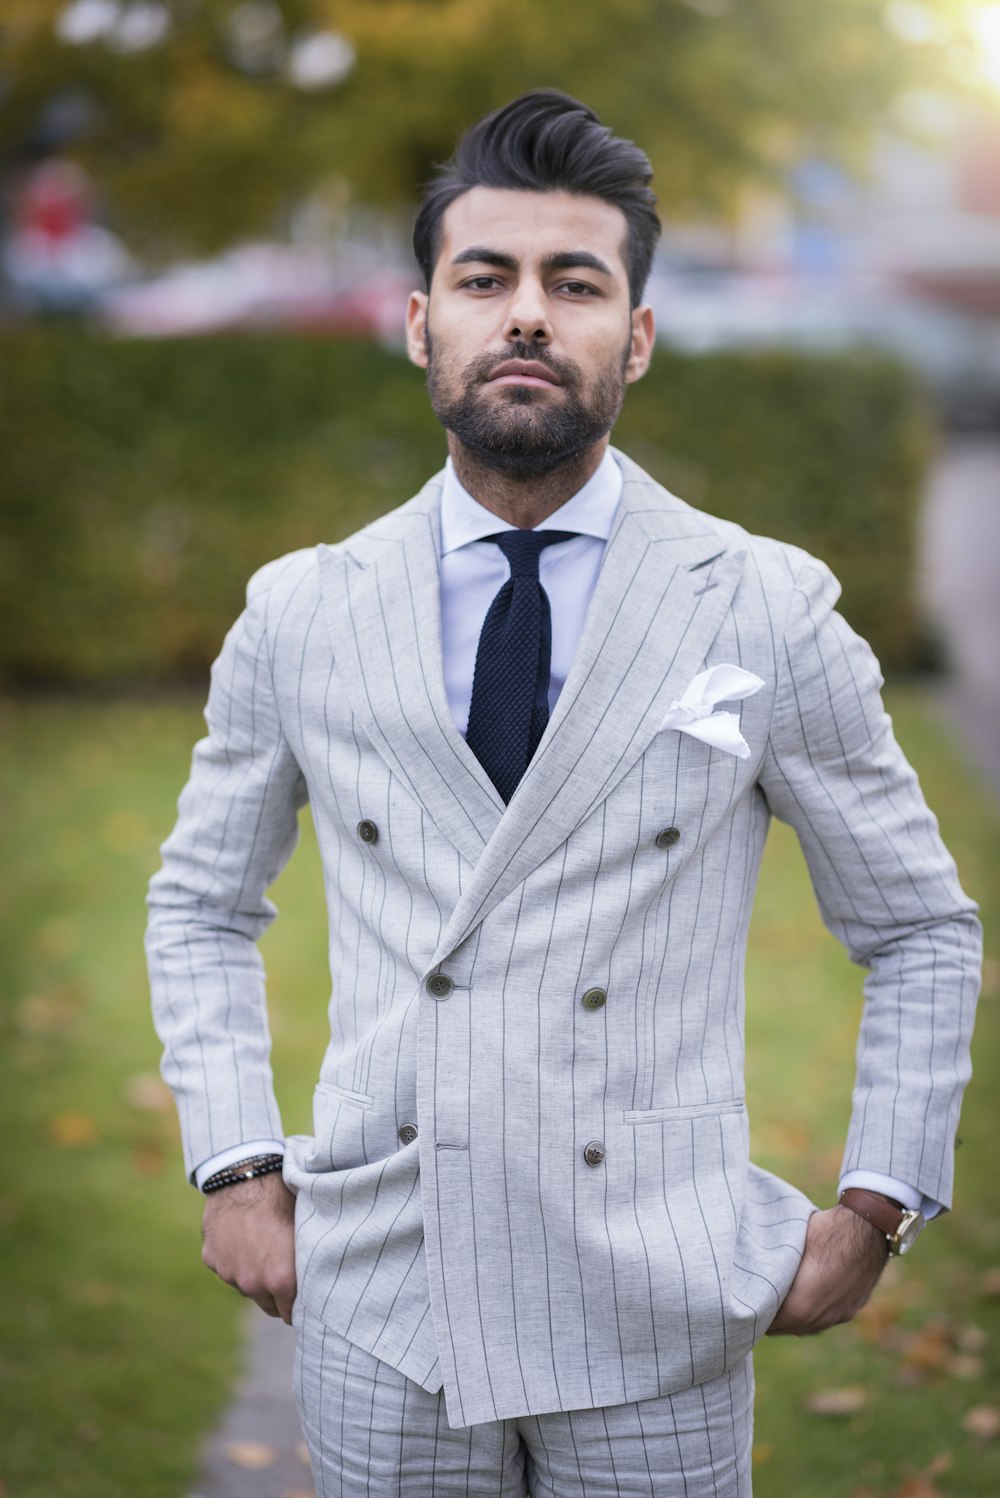 Foto Hombre con chaqueta de traje a rayas blancas y negras – Imagen  Confianza gratis en Unsplash